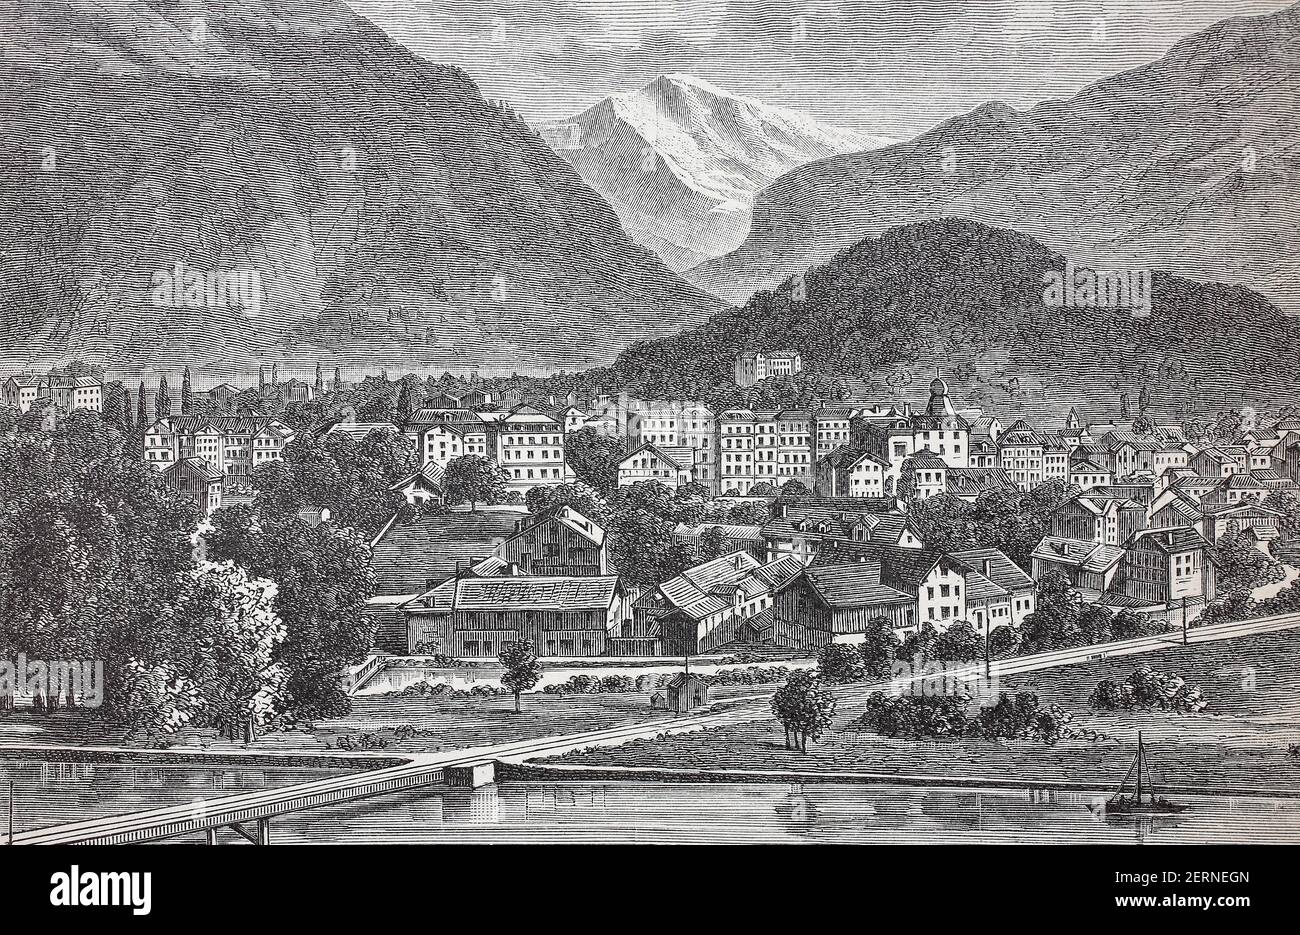 Die Stadt Interlaken in der Schweiz, 1880 / die Stadt Interlaken in der Schweiz, im Jahr 1880, Historisch, historisch, digital verbessert Vorwurf Stockfoto